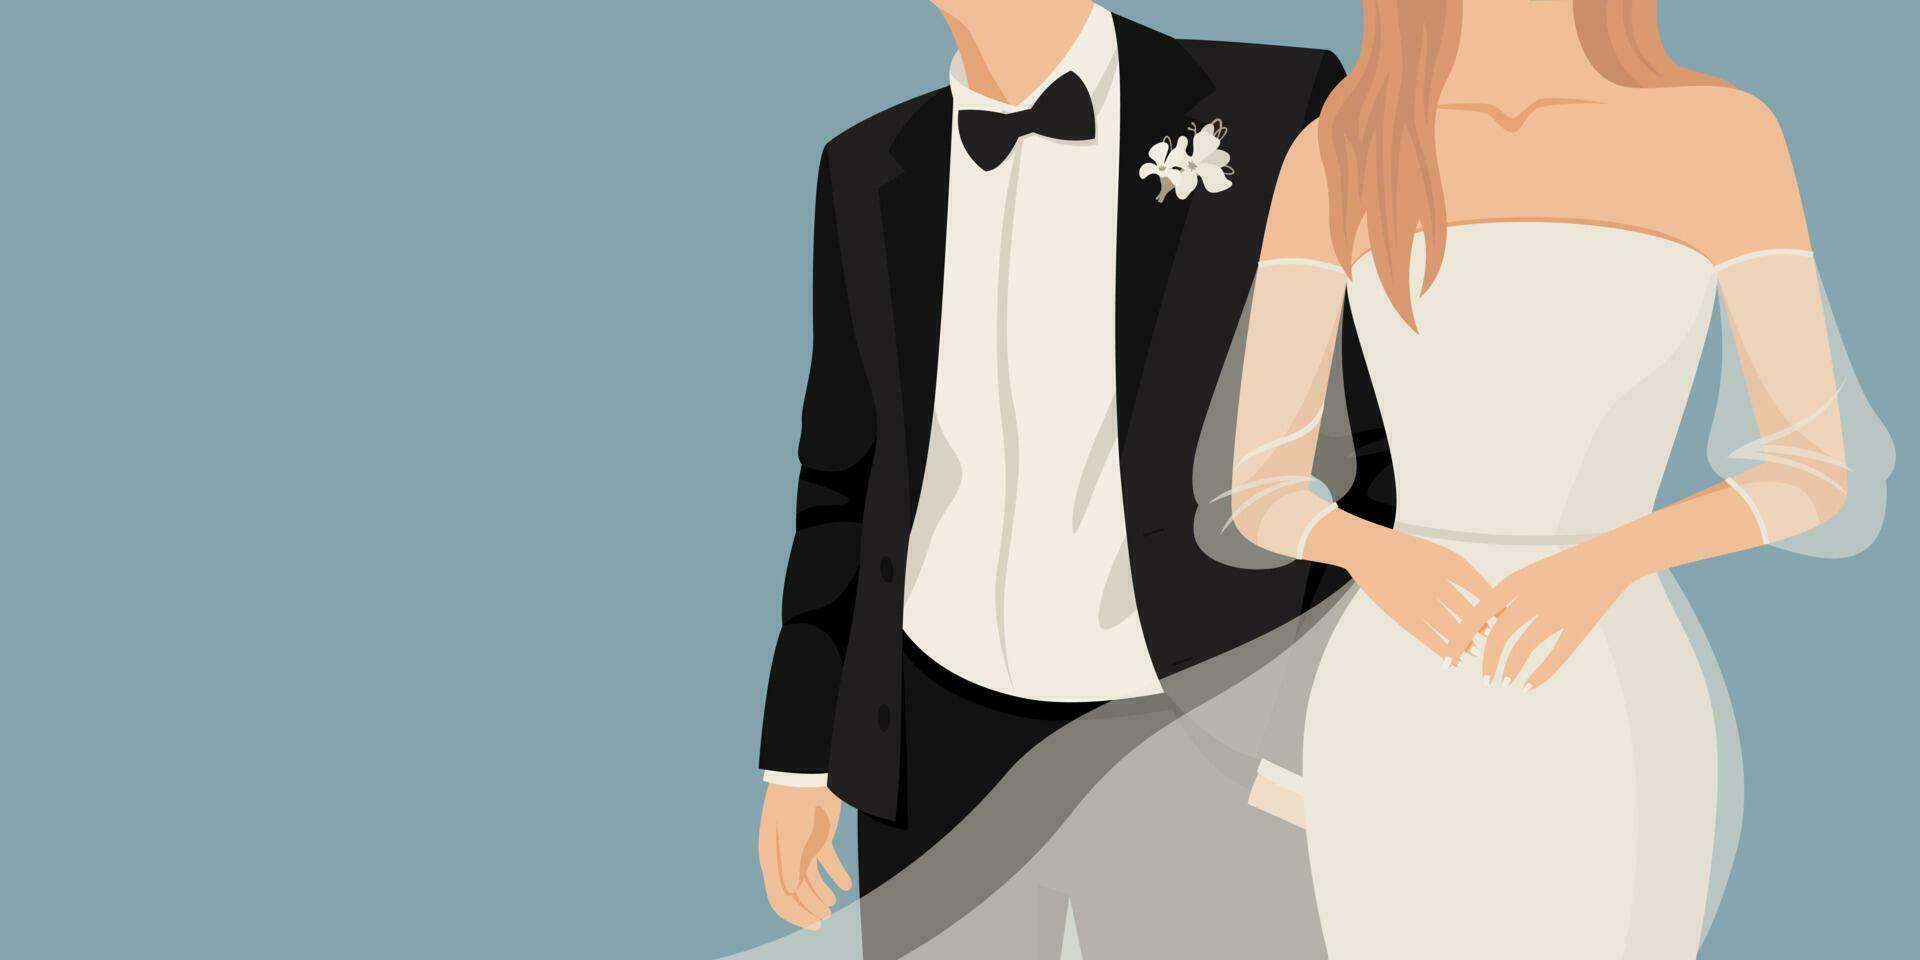 pasgetrouwden, bruid en bruidegom. bruiloft ontwerp voor uitnodiging, web banier, ansichtkaart, bruiloft salon. vector abstract illustratie